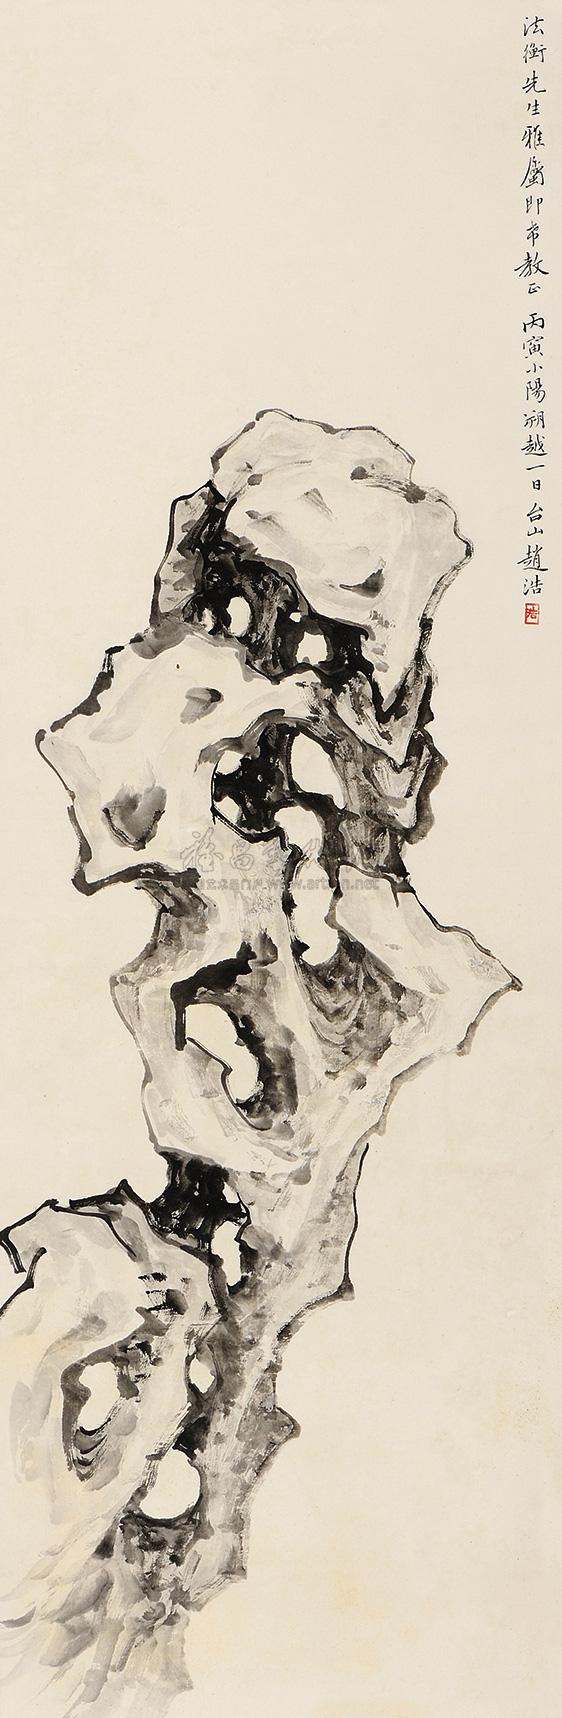 0270 丙寅(1926年)作 寿石图 立轴 水墨纸本